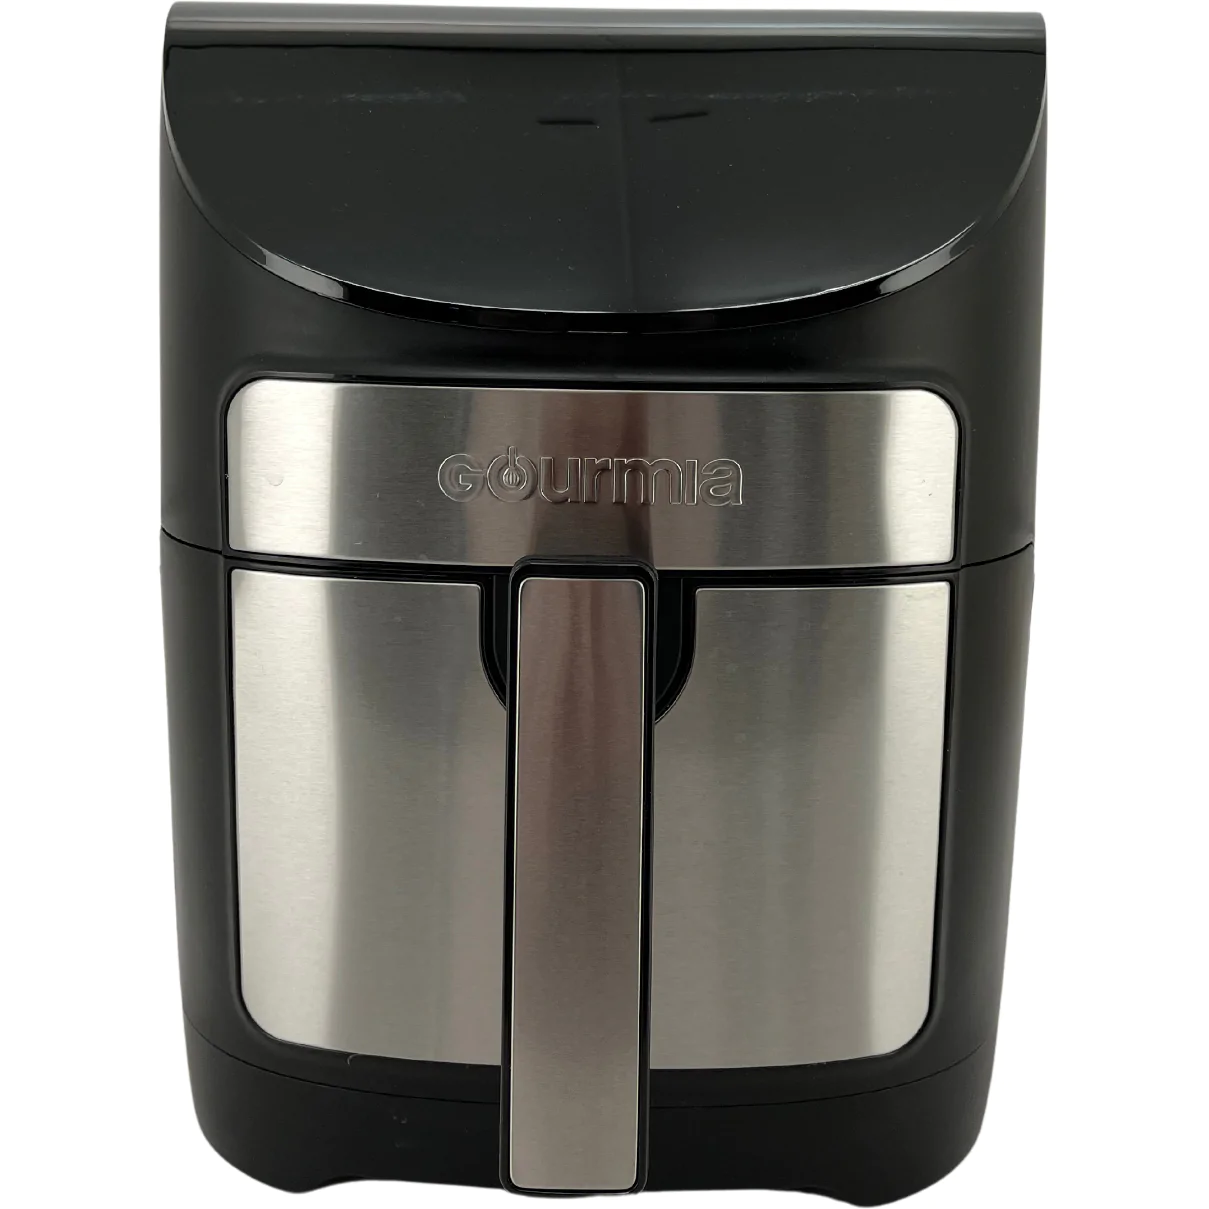 Gourmia 7 Quart/6.7 Liter Digital Air Fryer - appliances - by